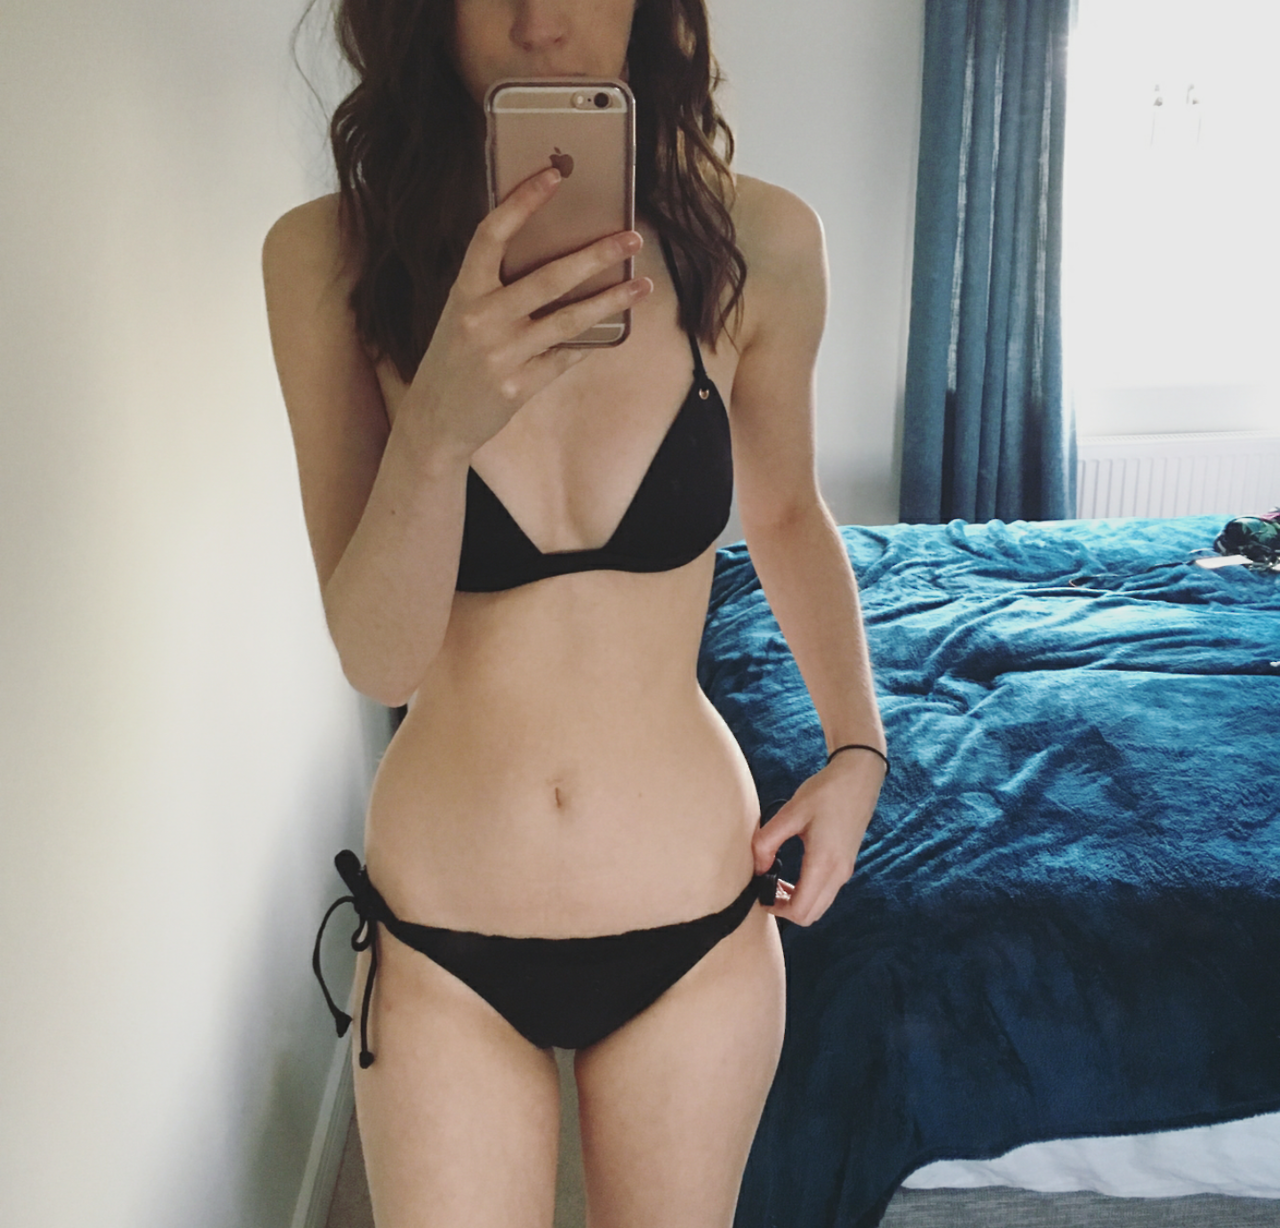 Bikini selfies